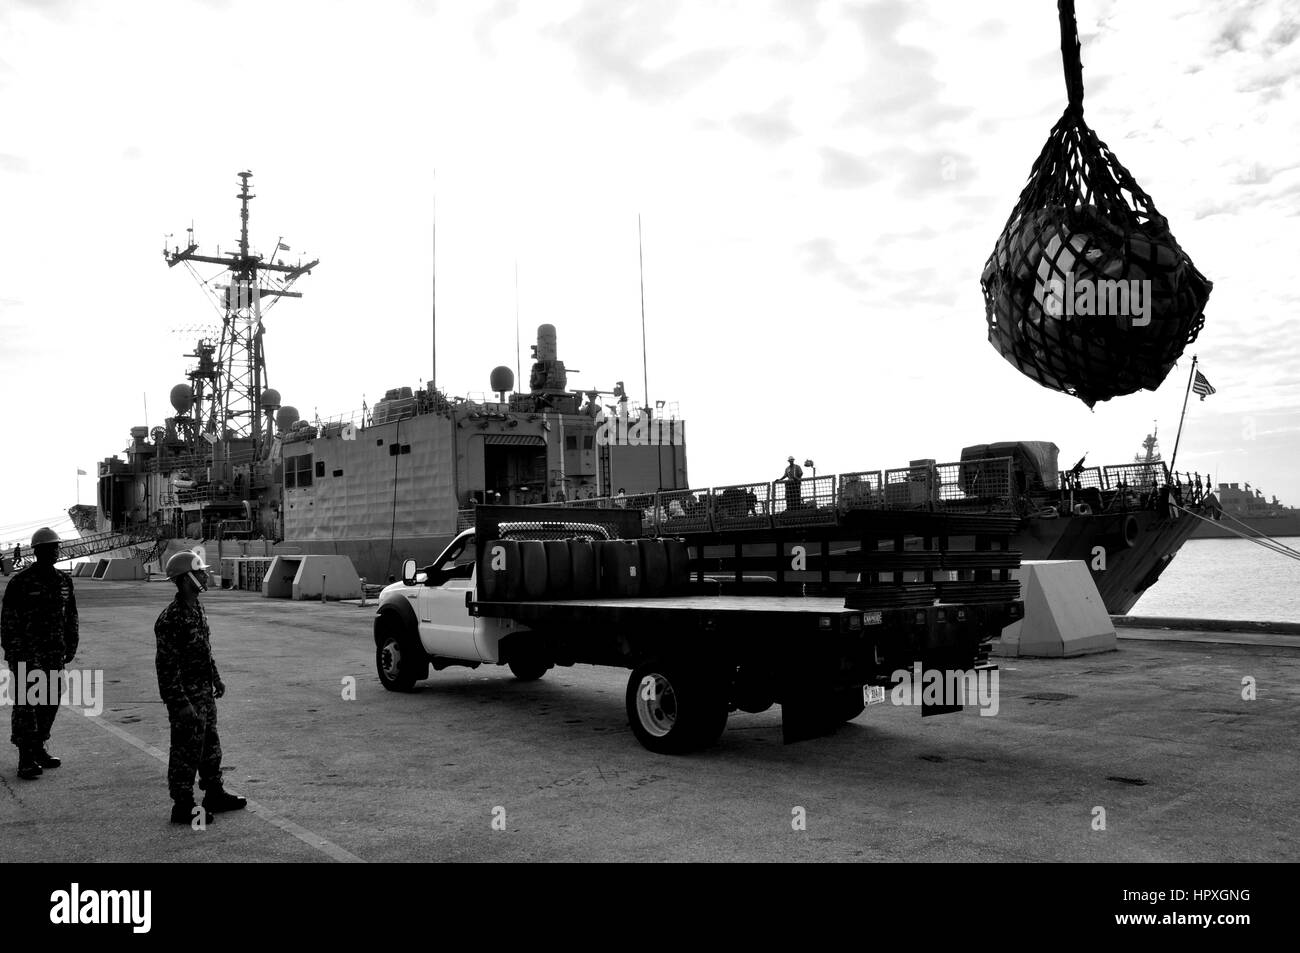 Des marins déchargent 1,5 tonnes de cocaïne et près de 3 tonnes de marijuana de la classe Oliver Hazard Perry frégate lance-missiles USS Carr (FFG 52), 2012. Image courtoisie Corey Barker et l'US Navy. Banque D'Images